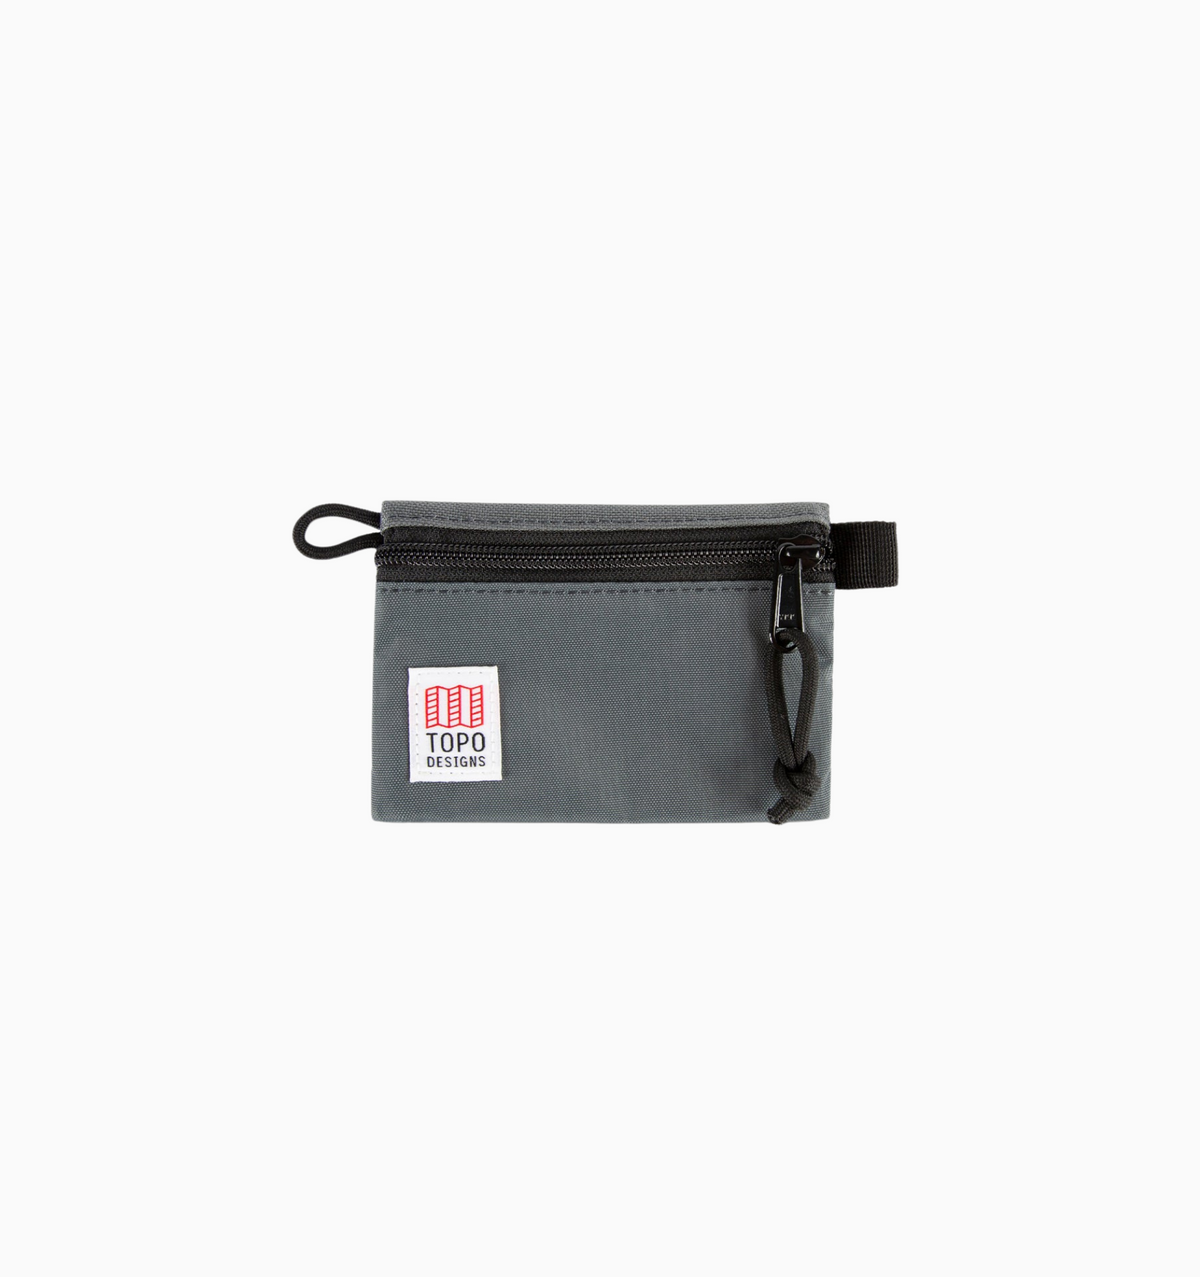 Topo Designs Micro Accessory Bag - Charcoal